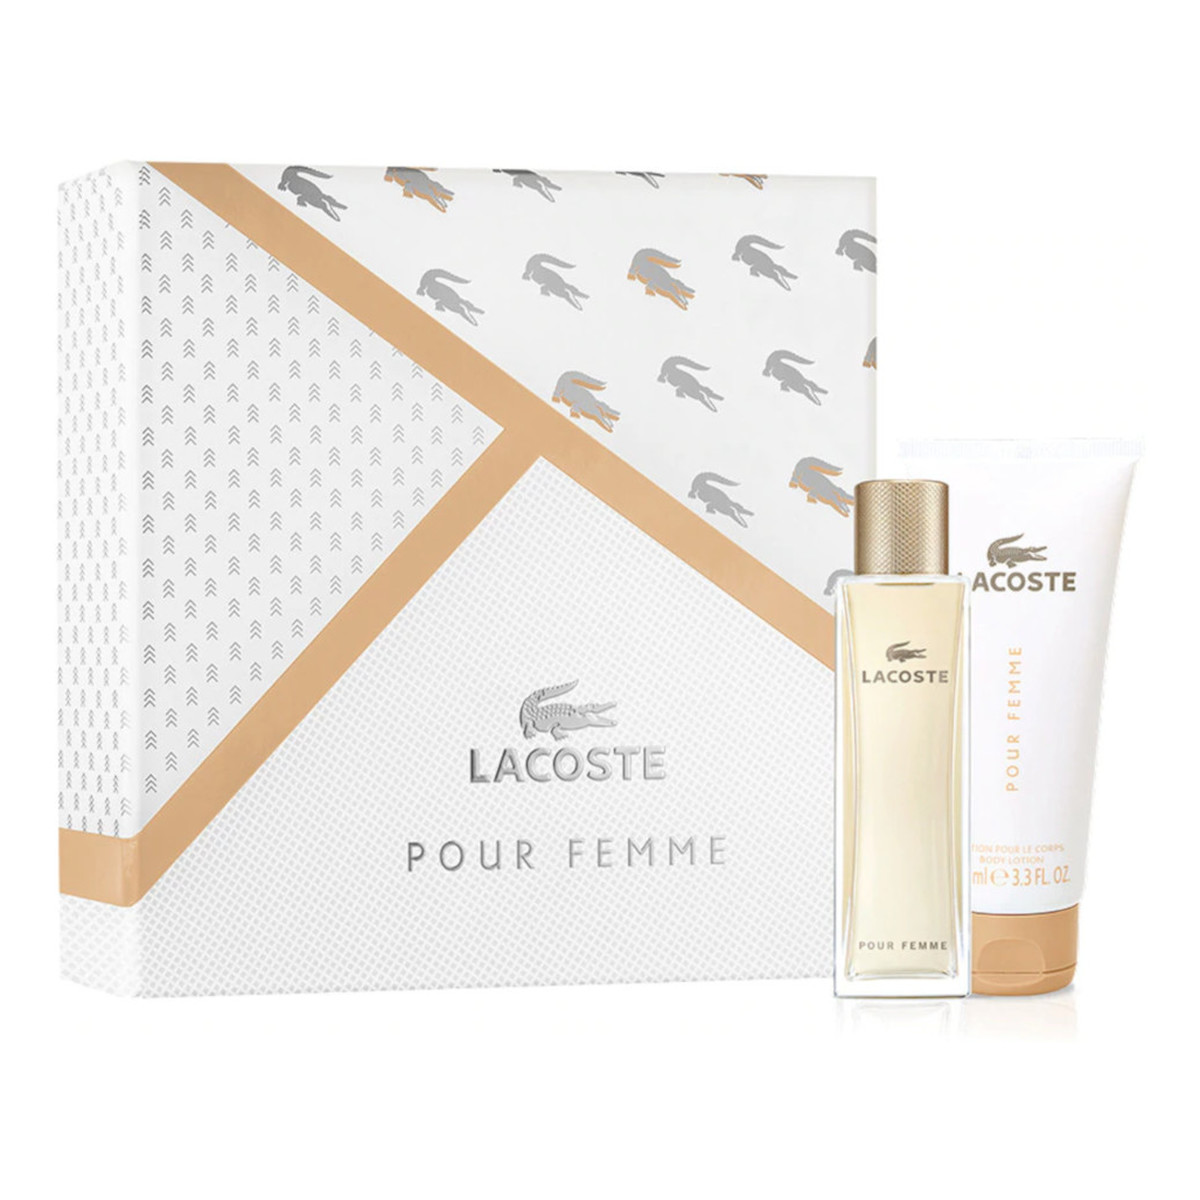 Lacoste Pour Femme zestaw (woda perfumowana 50ml + balsam do ciała 100ml)